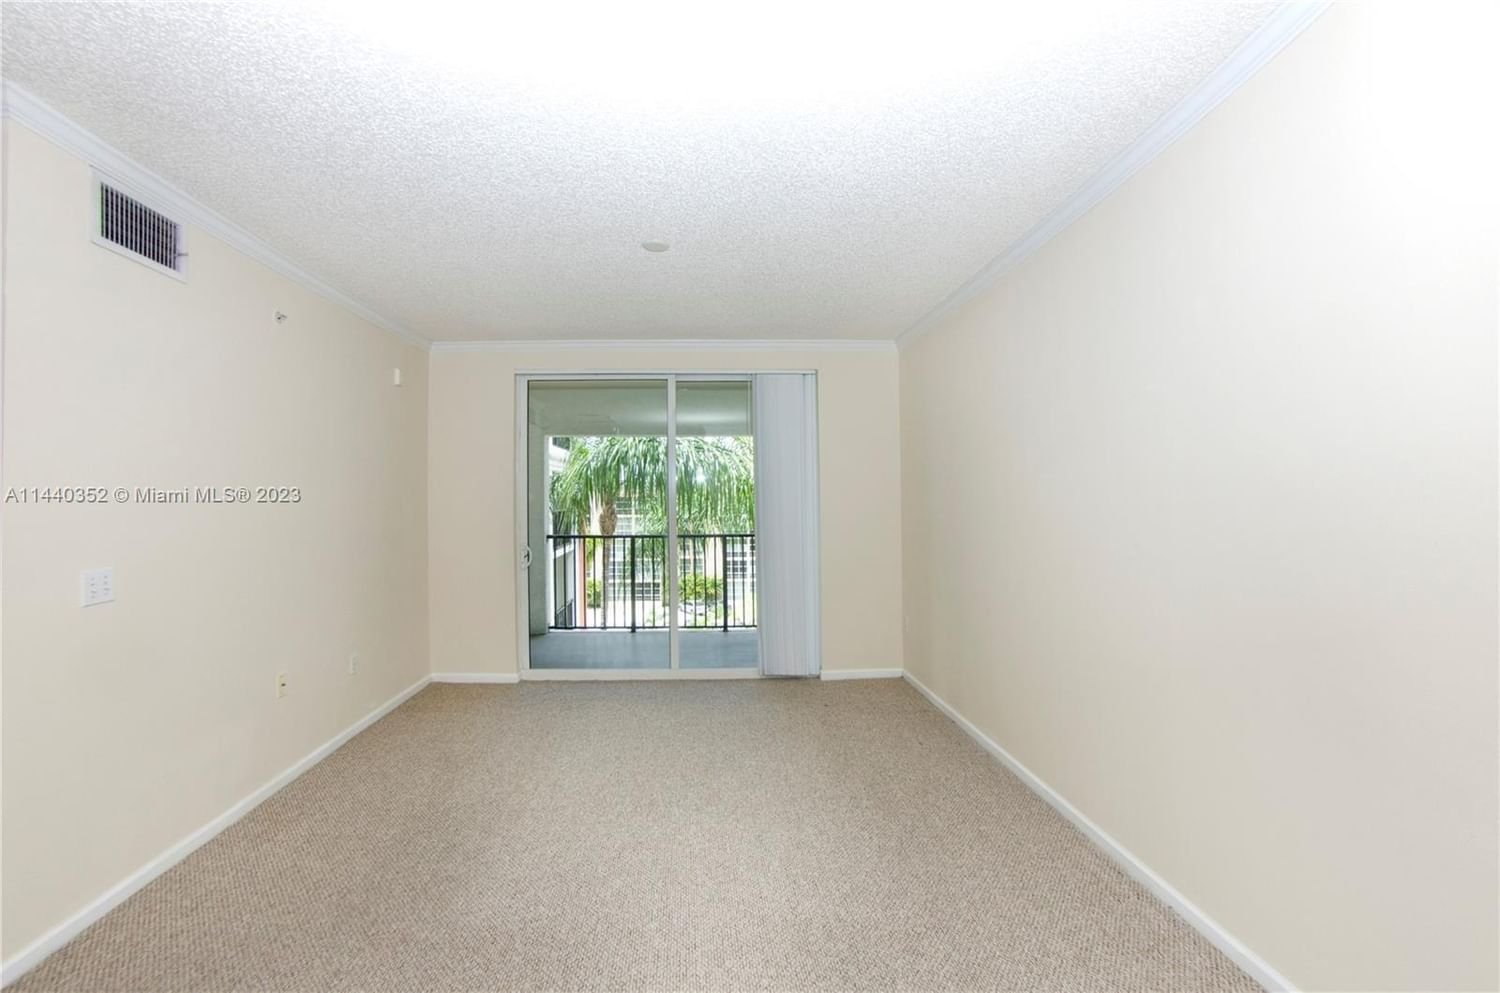 Real estate property located at 17125 Bay Rd #3502, Miami-Dade County, PORTO BELLAGIO CONDO, Sunny Isles Beach, FL